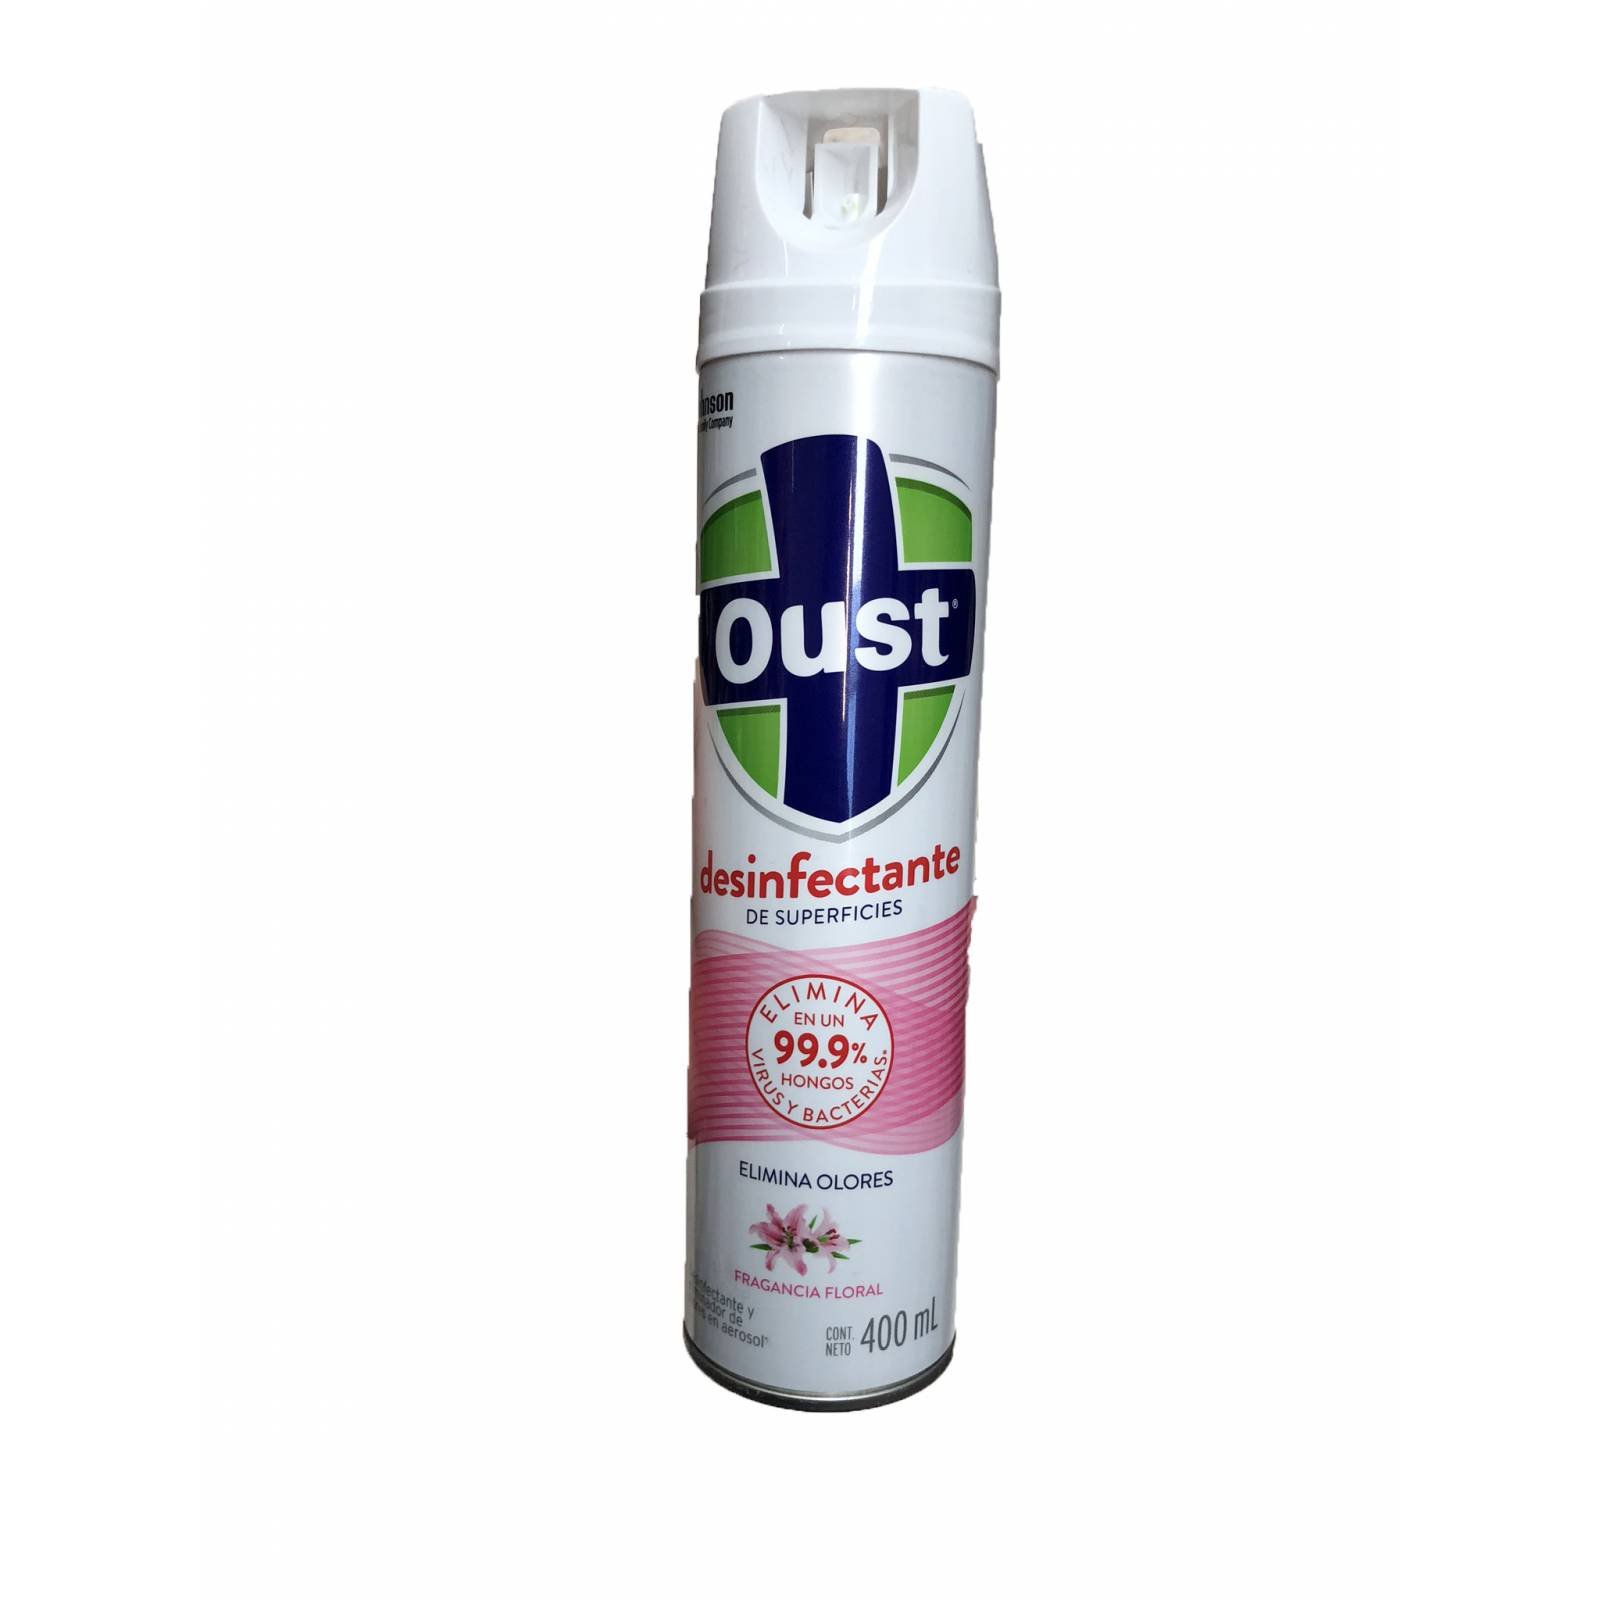 Oust Desinfectante de superficies, Elimina 99.9% de hongos, virus y bacterias, elimina los malos olores. Fragancia Frescura Campestre. 400 ml.